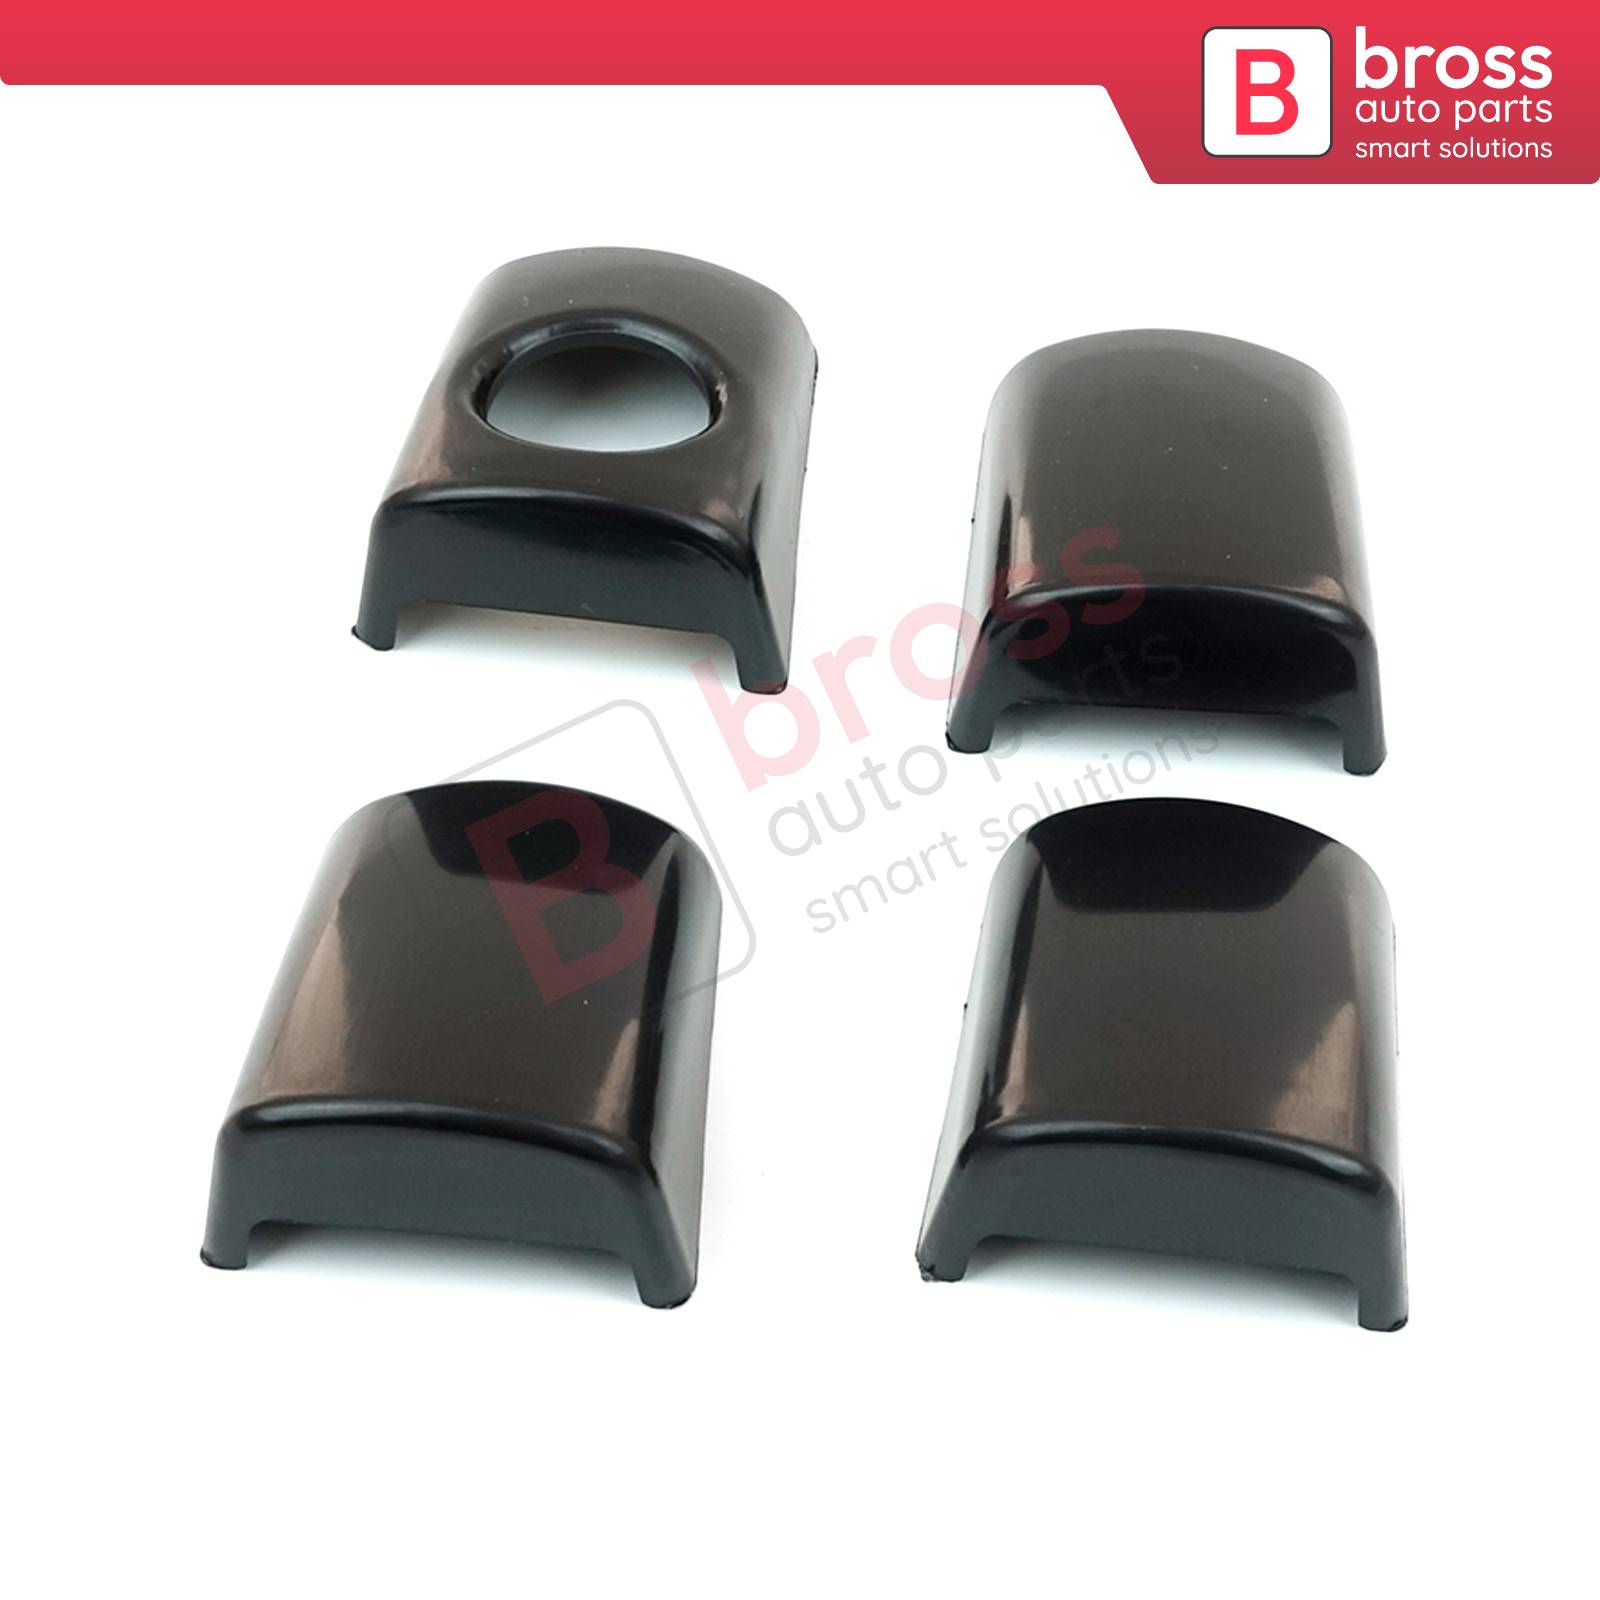 Bross Auto Parts LLC - BDP989 Exterior Outer Door Handle Cover Set